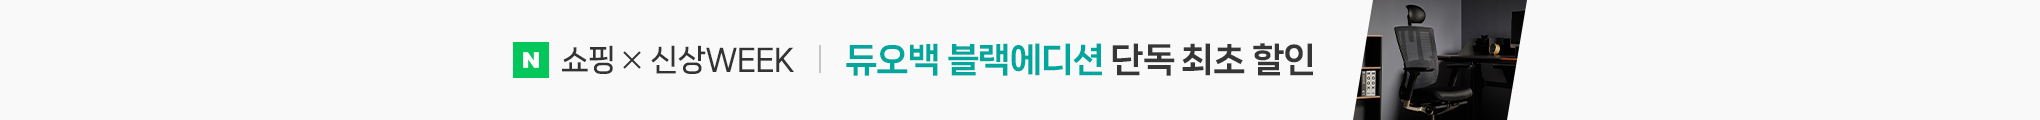 5월 20일부터 5월 26일까지 듀오백 블랙에디션 단독 최초 할인